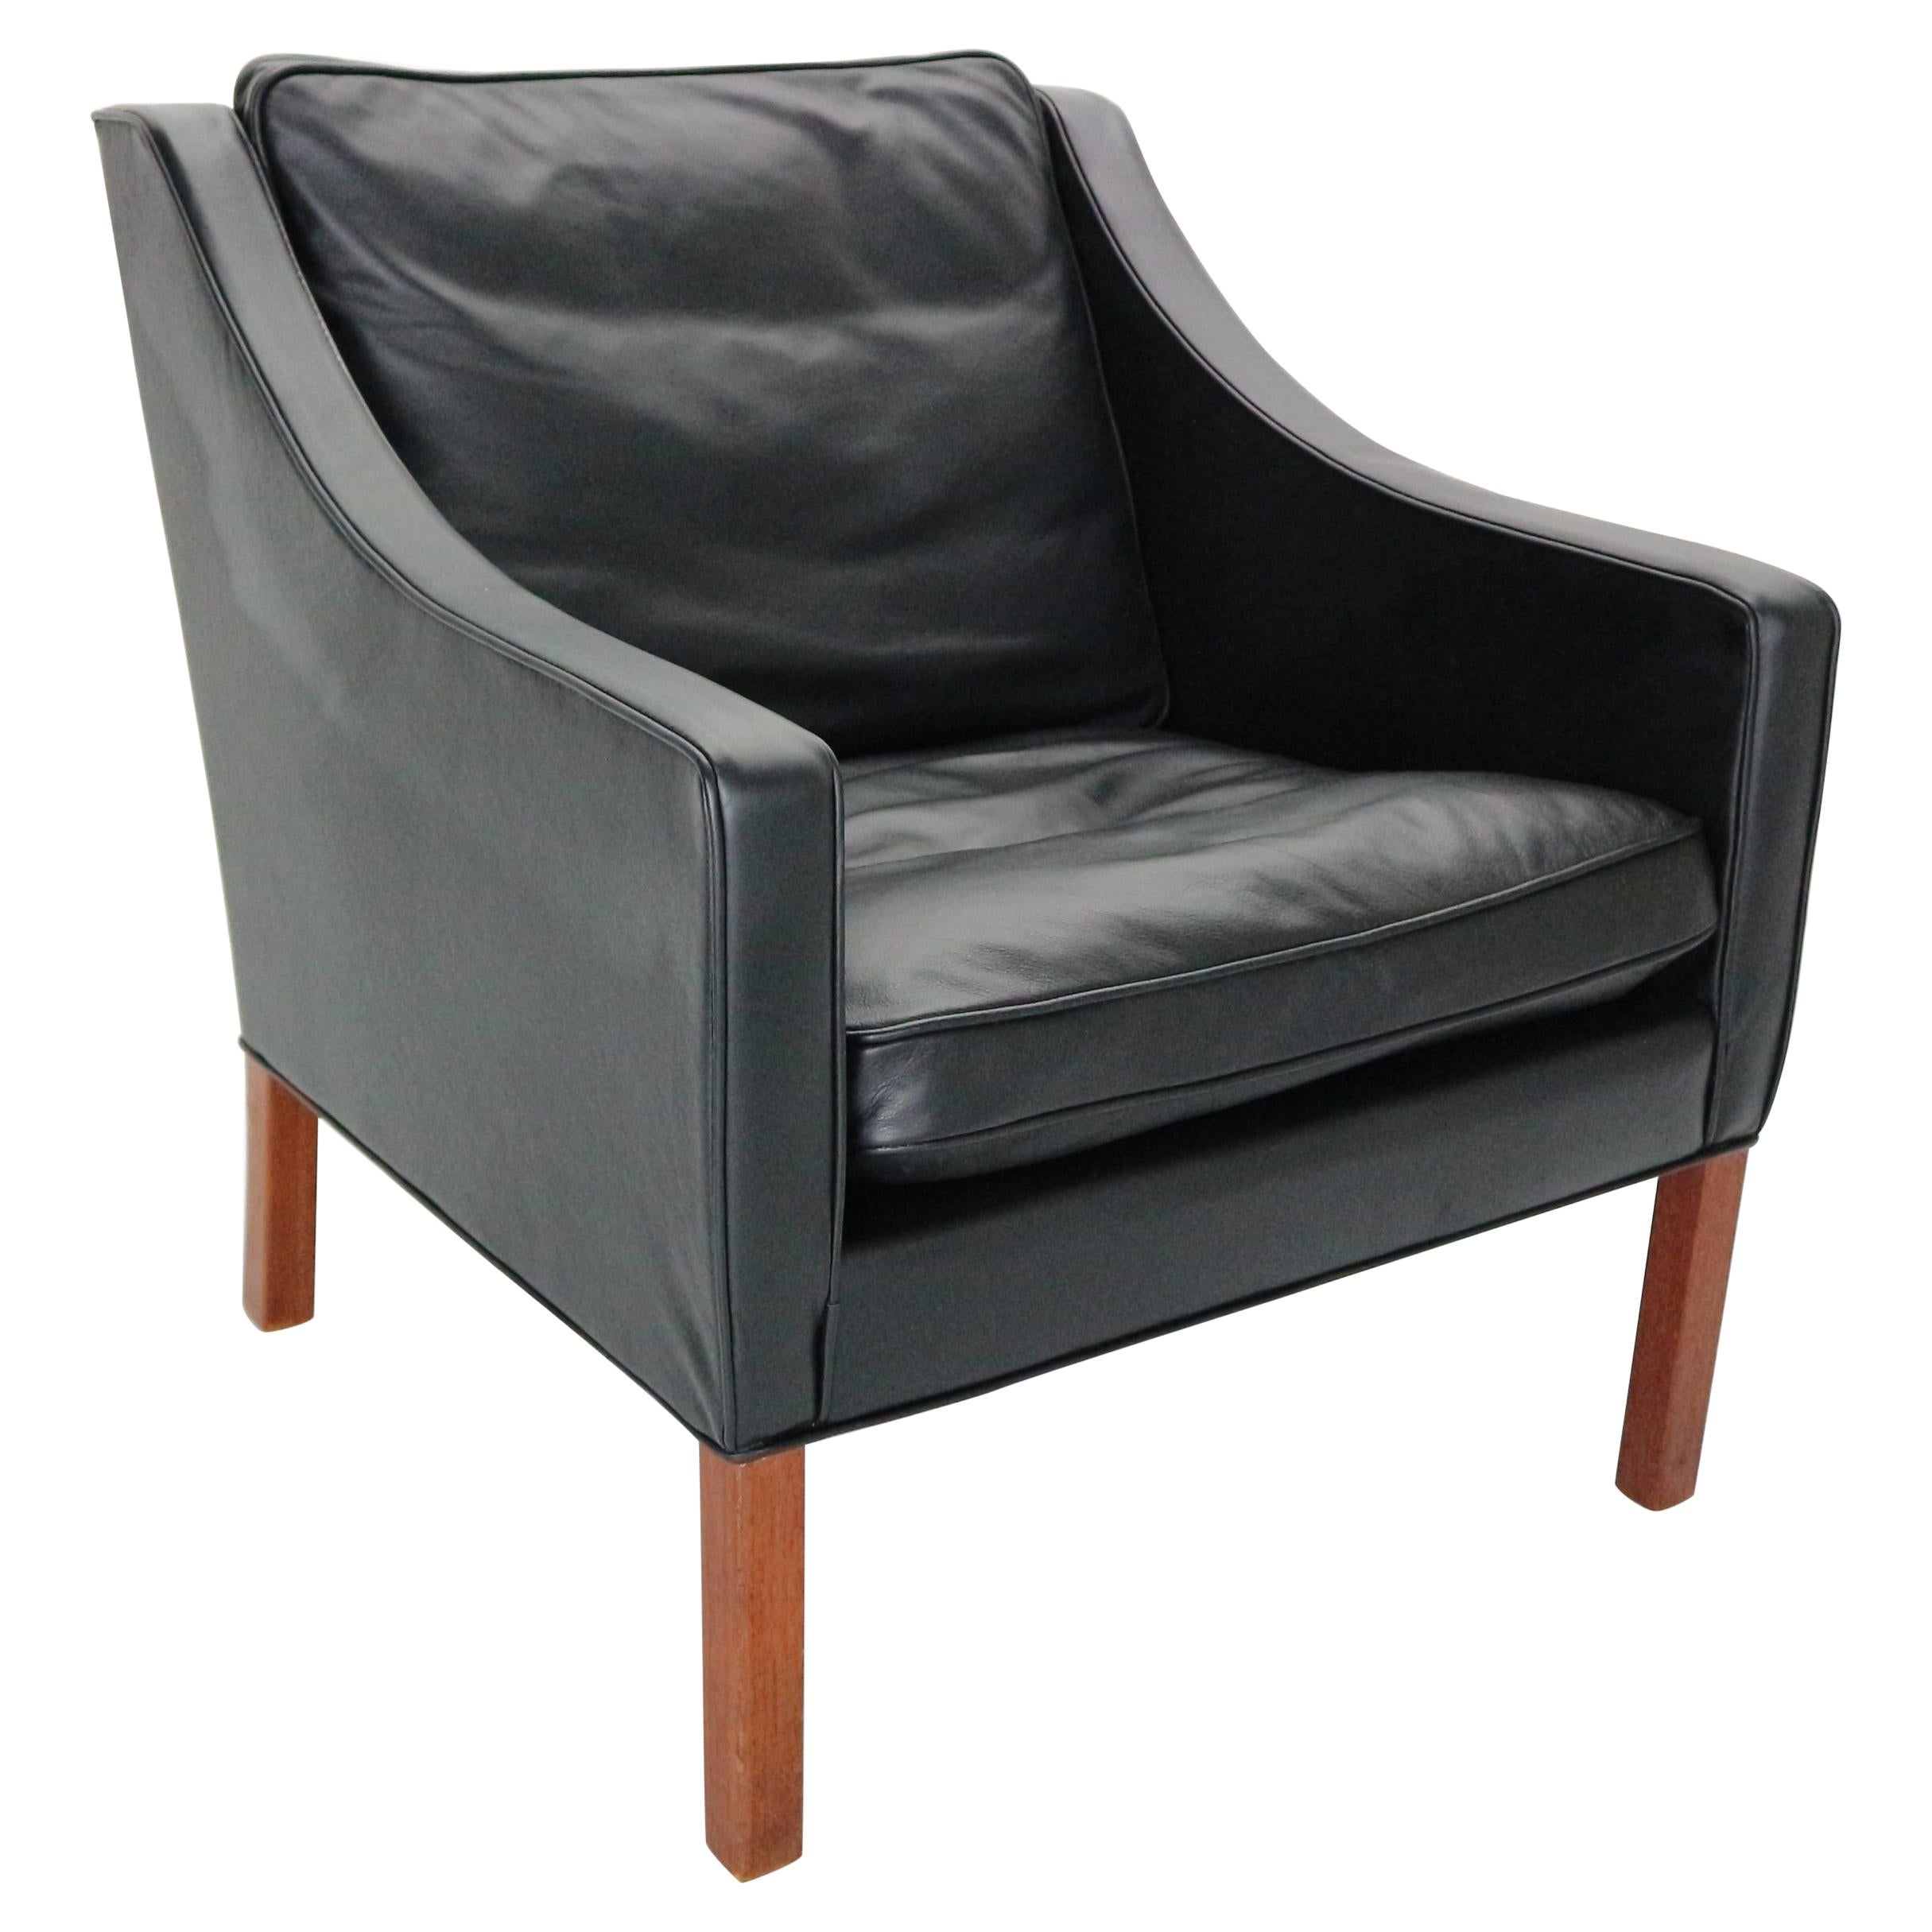 Børge Mogensen Model #2207 Black Leather Lounge Chair, 1960s Denmark